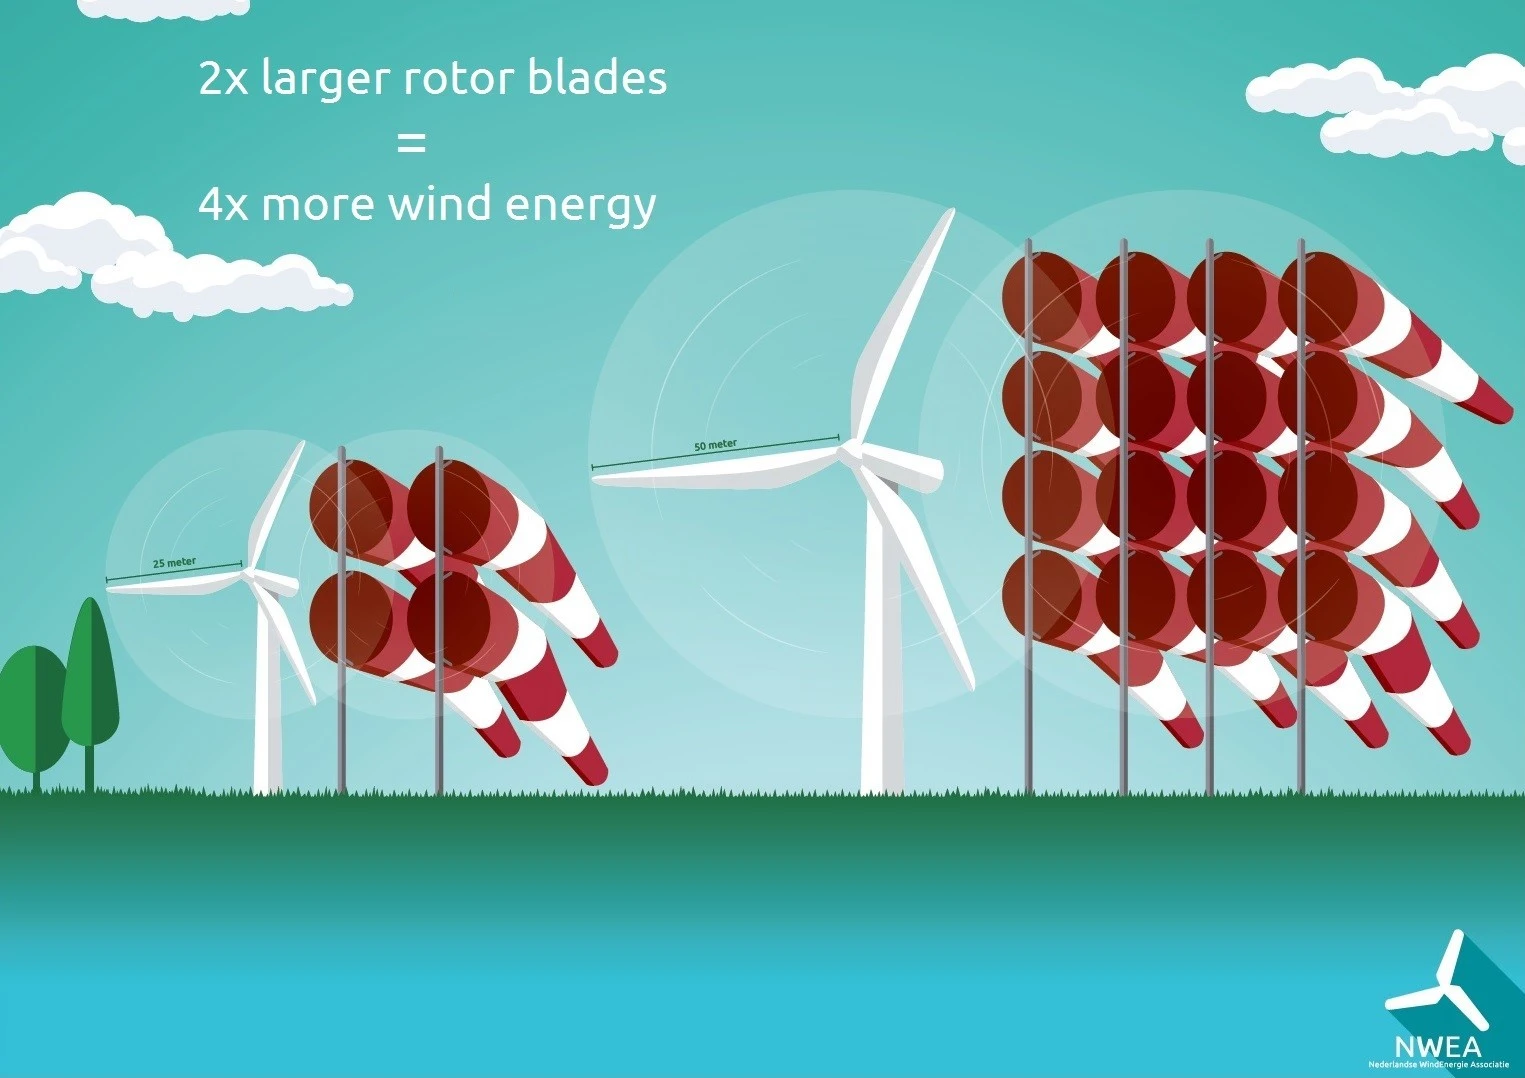 Big blades in wind turbines